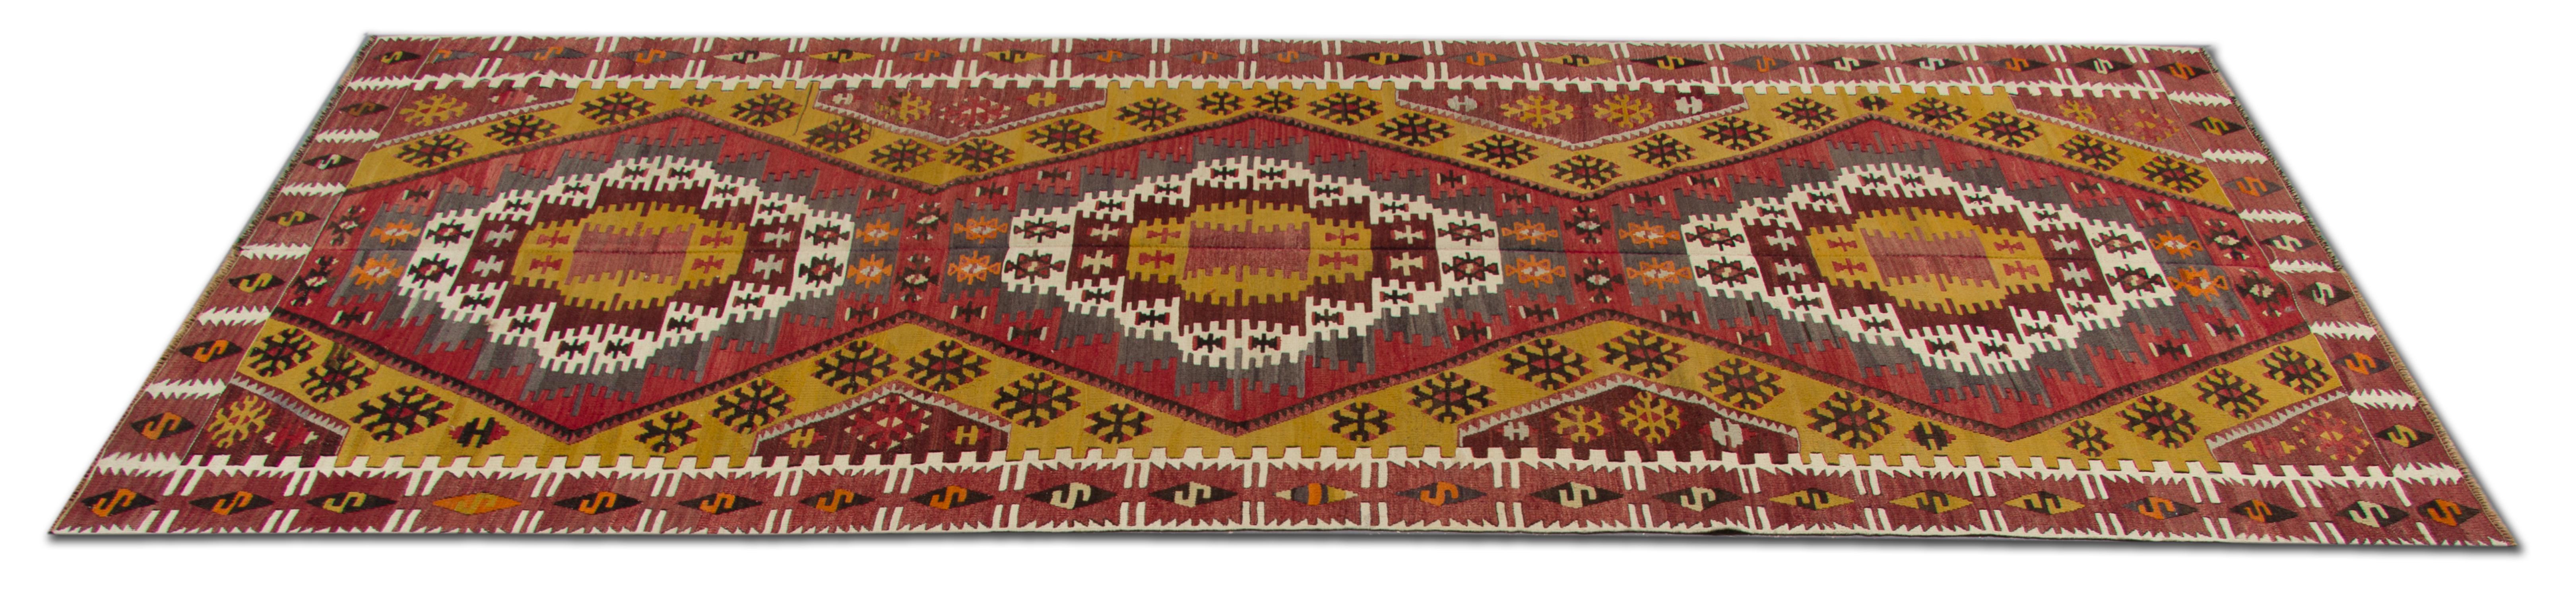 Konya liegt im Herzen der Türkei. Die Werkstattkelims von Konya sind vor allem für ihre ausgeprägten geometrischen Muster bekannt. Diese handgefertigten Teppiche Antique rug traditional handwoven runner rugs kommen aus der Welt der Teppiche in einer